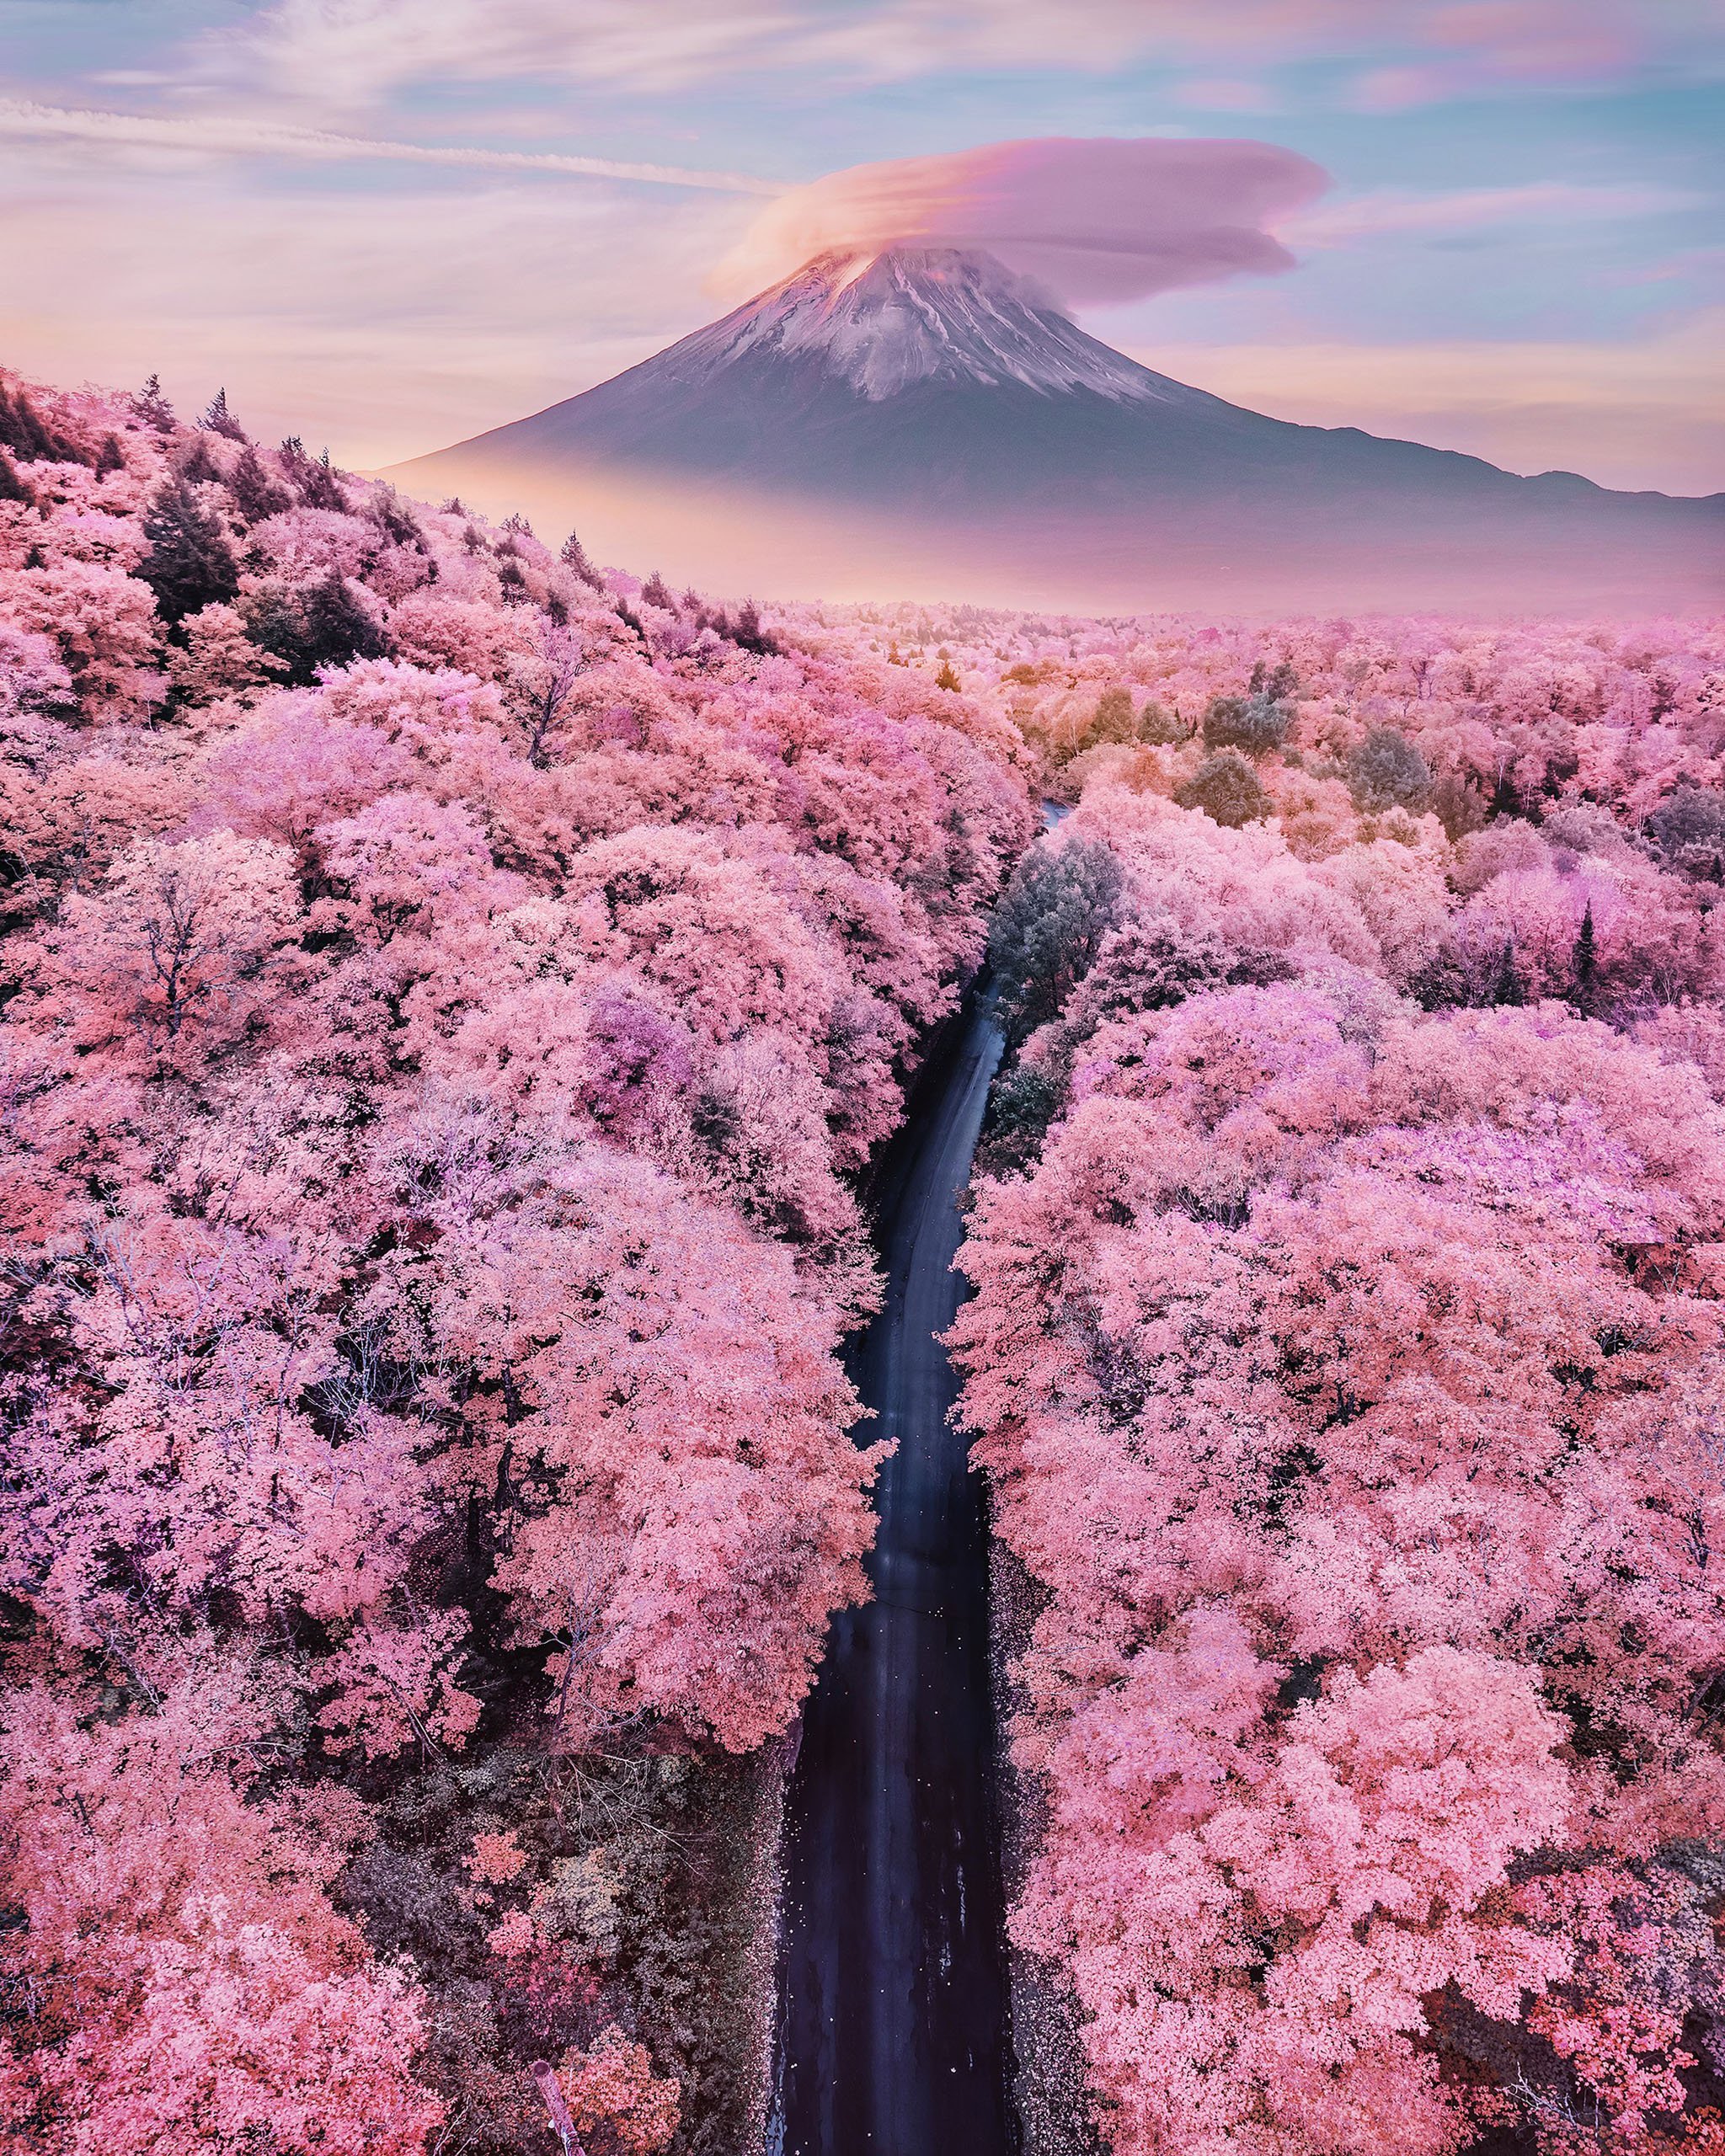 Hãy cùng ngắm ảnh Nhật Bản đẹp với những cánh đồng hoa anh đào, ngôi đền Shinto thần thánh hay những con phố về đêm lung linh ánh đèn. Nét văn hóa đa dạng và sự hòa quyện giữa truyền thống và hiện đại sẽ khiến bạn ngưỡng mộ.